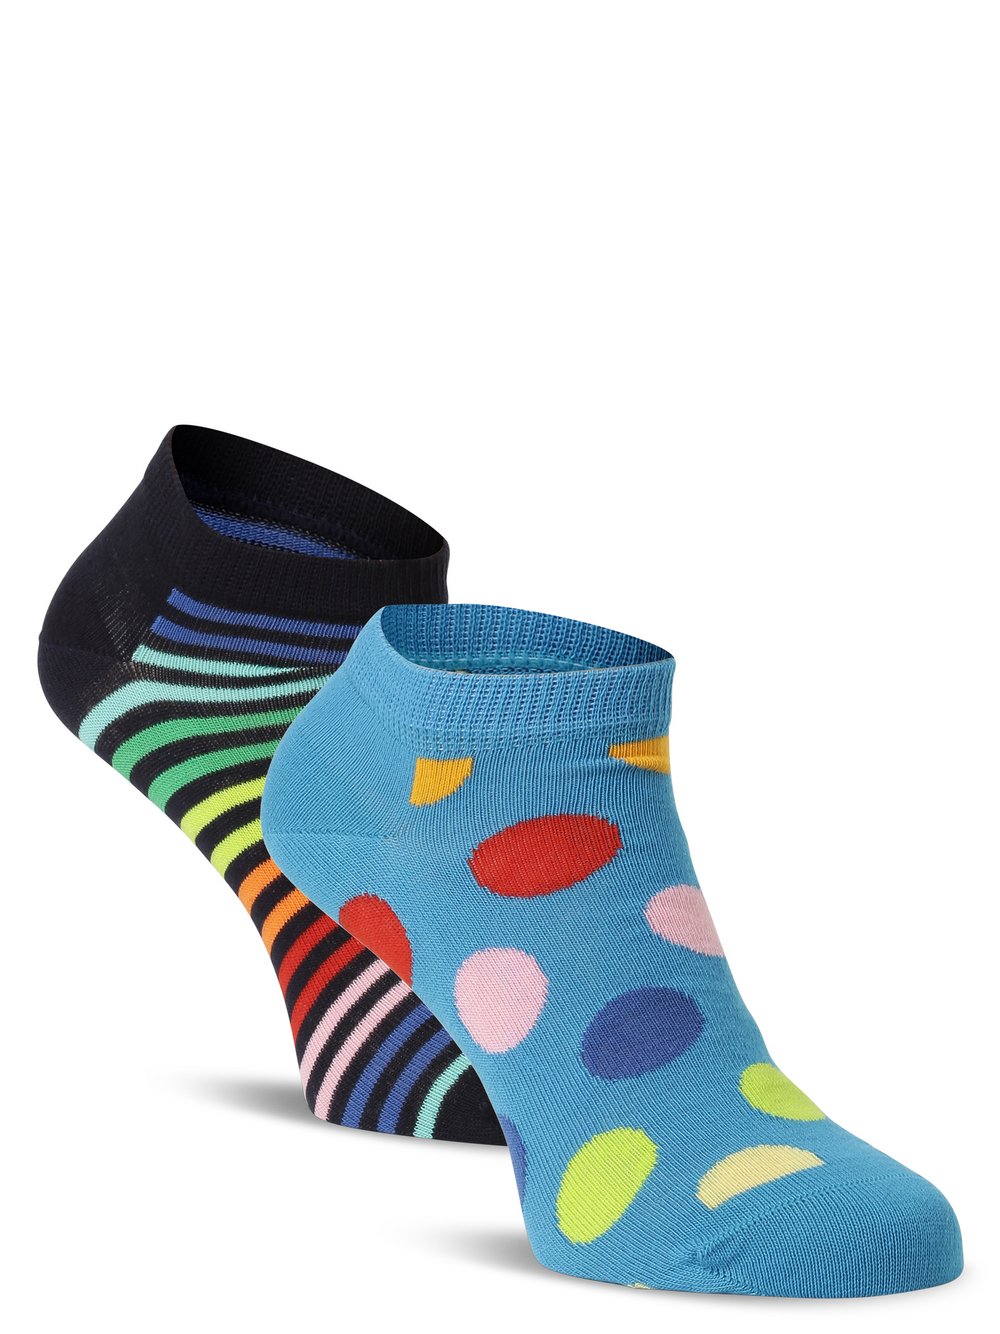 Happy Socks - Skarpety do obuwia sportowego pakowane po 2 szt., niebieski|wielokolorowy